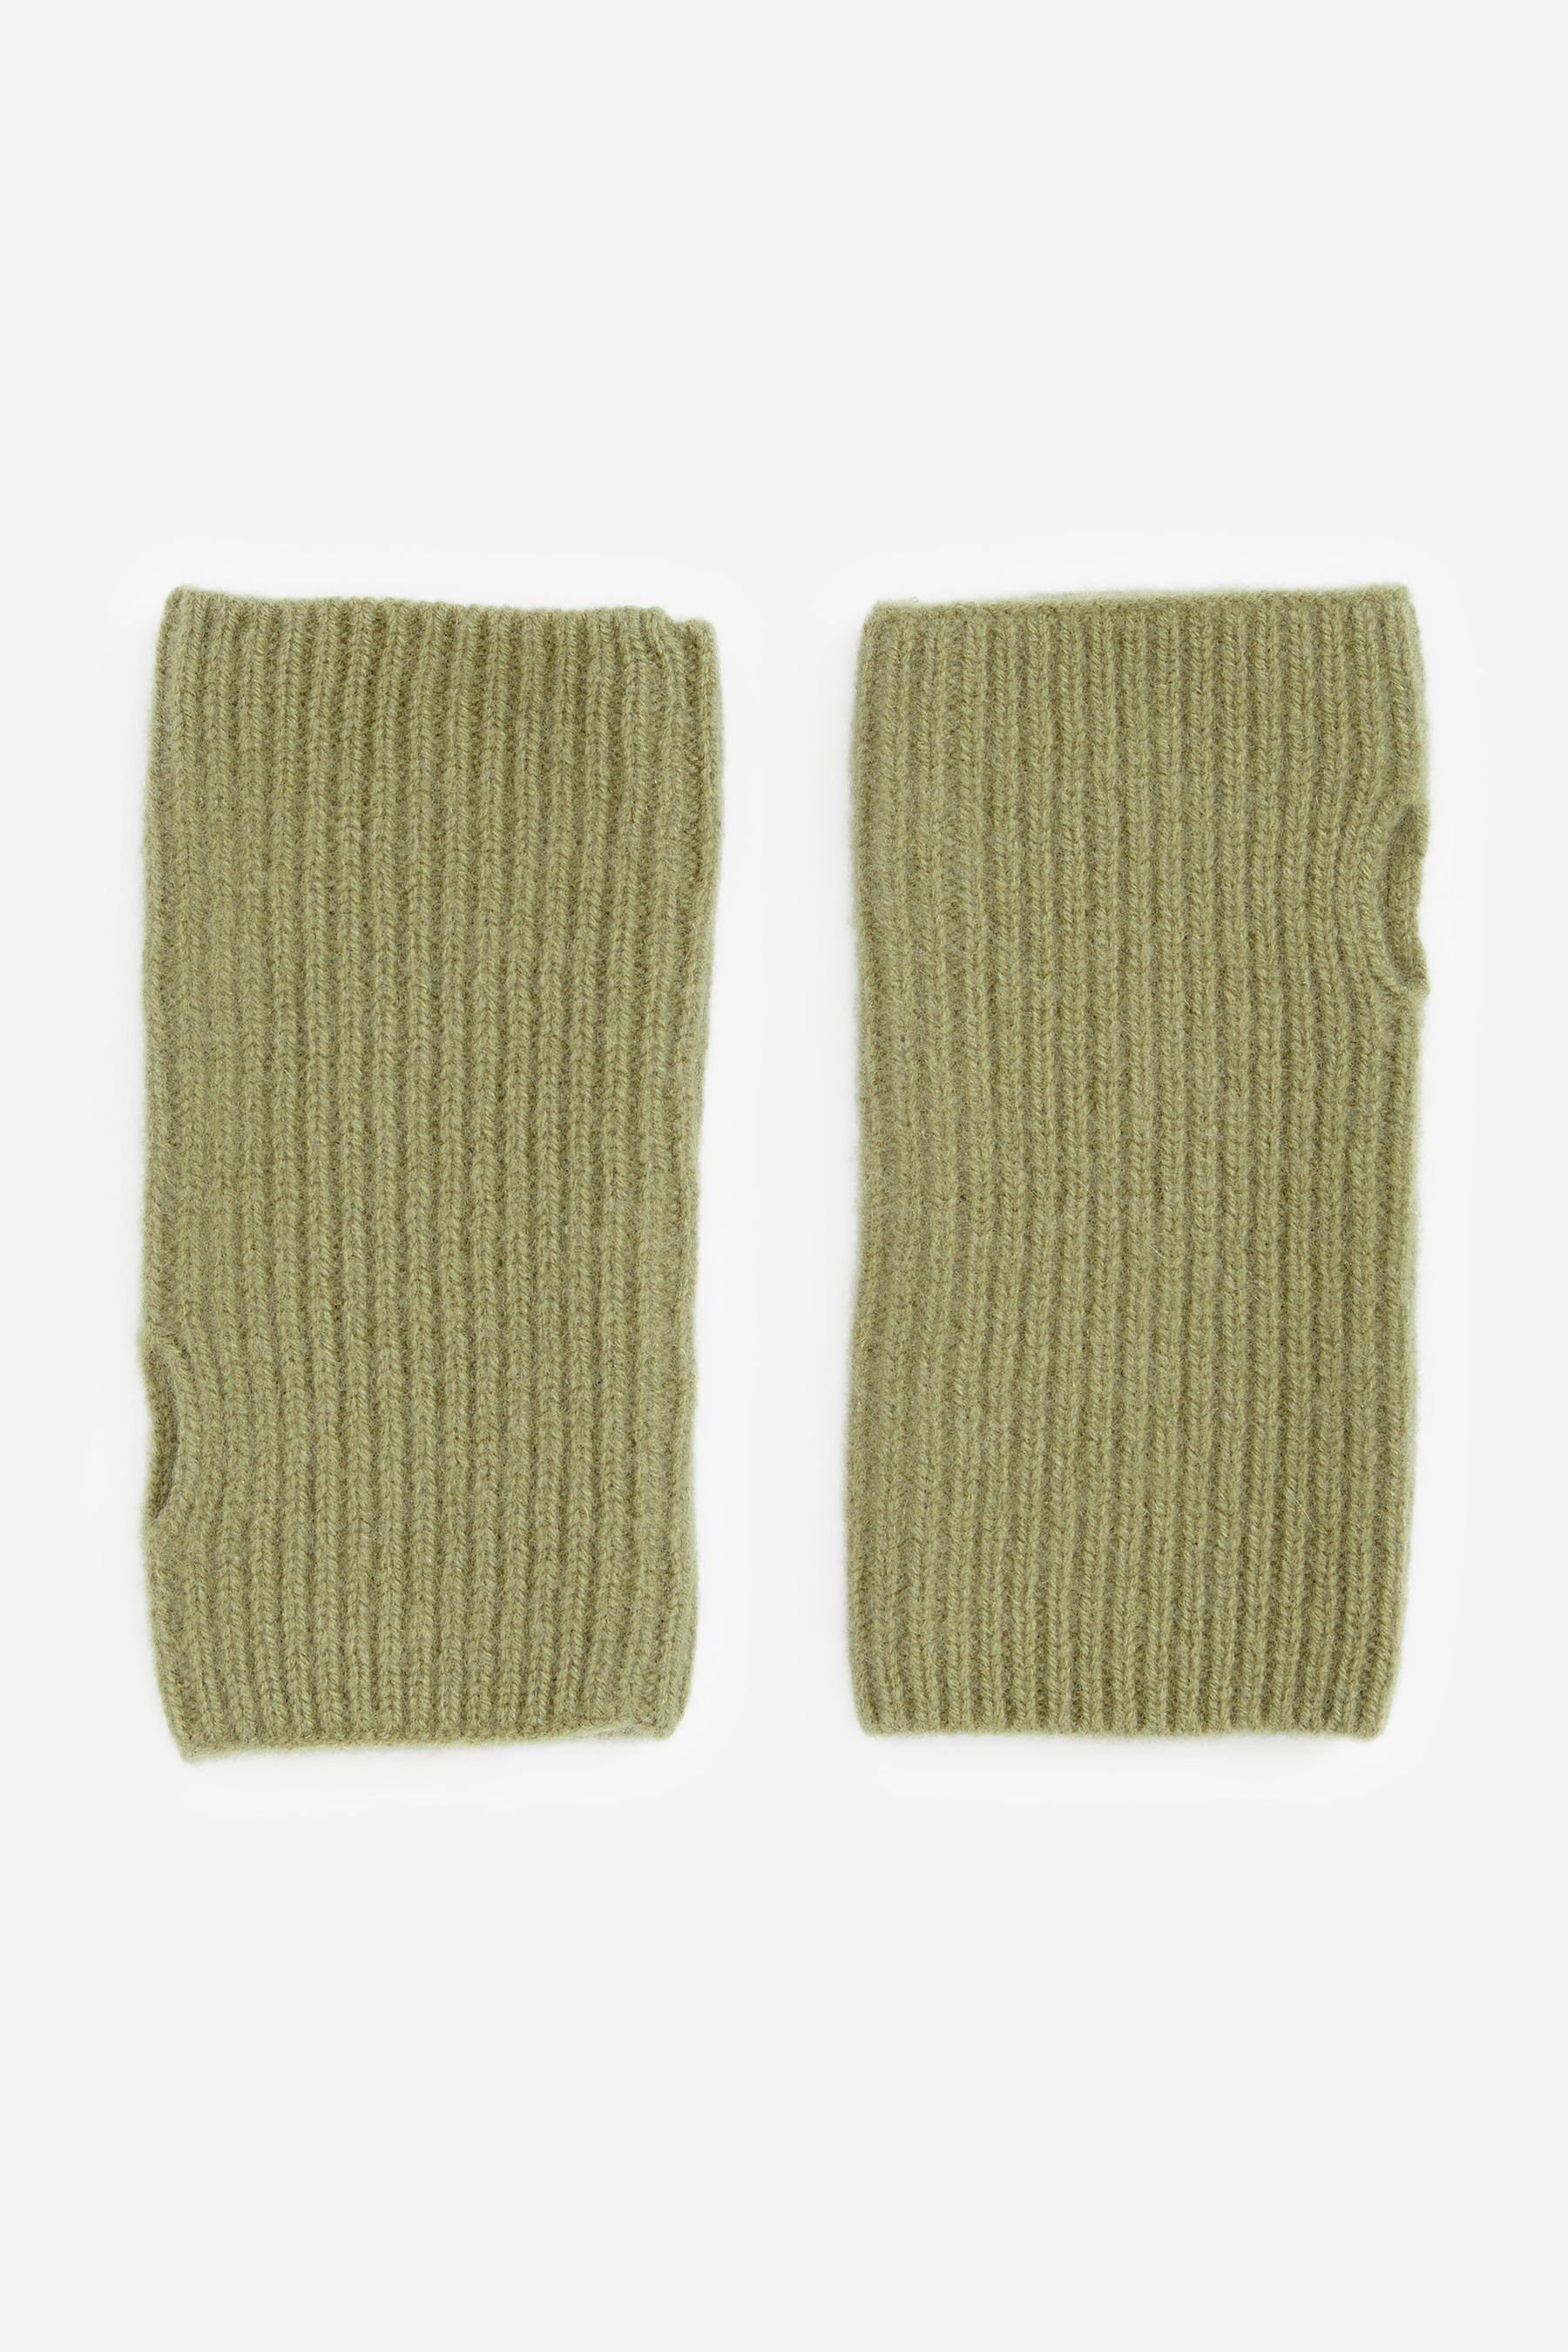 Kaschmir Handschuhe Collection Green Strickhandschuhe Next Handwärmer Luxe 30%